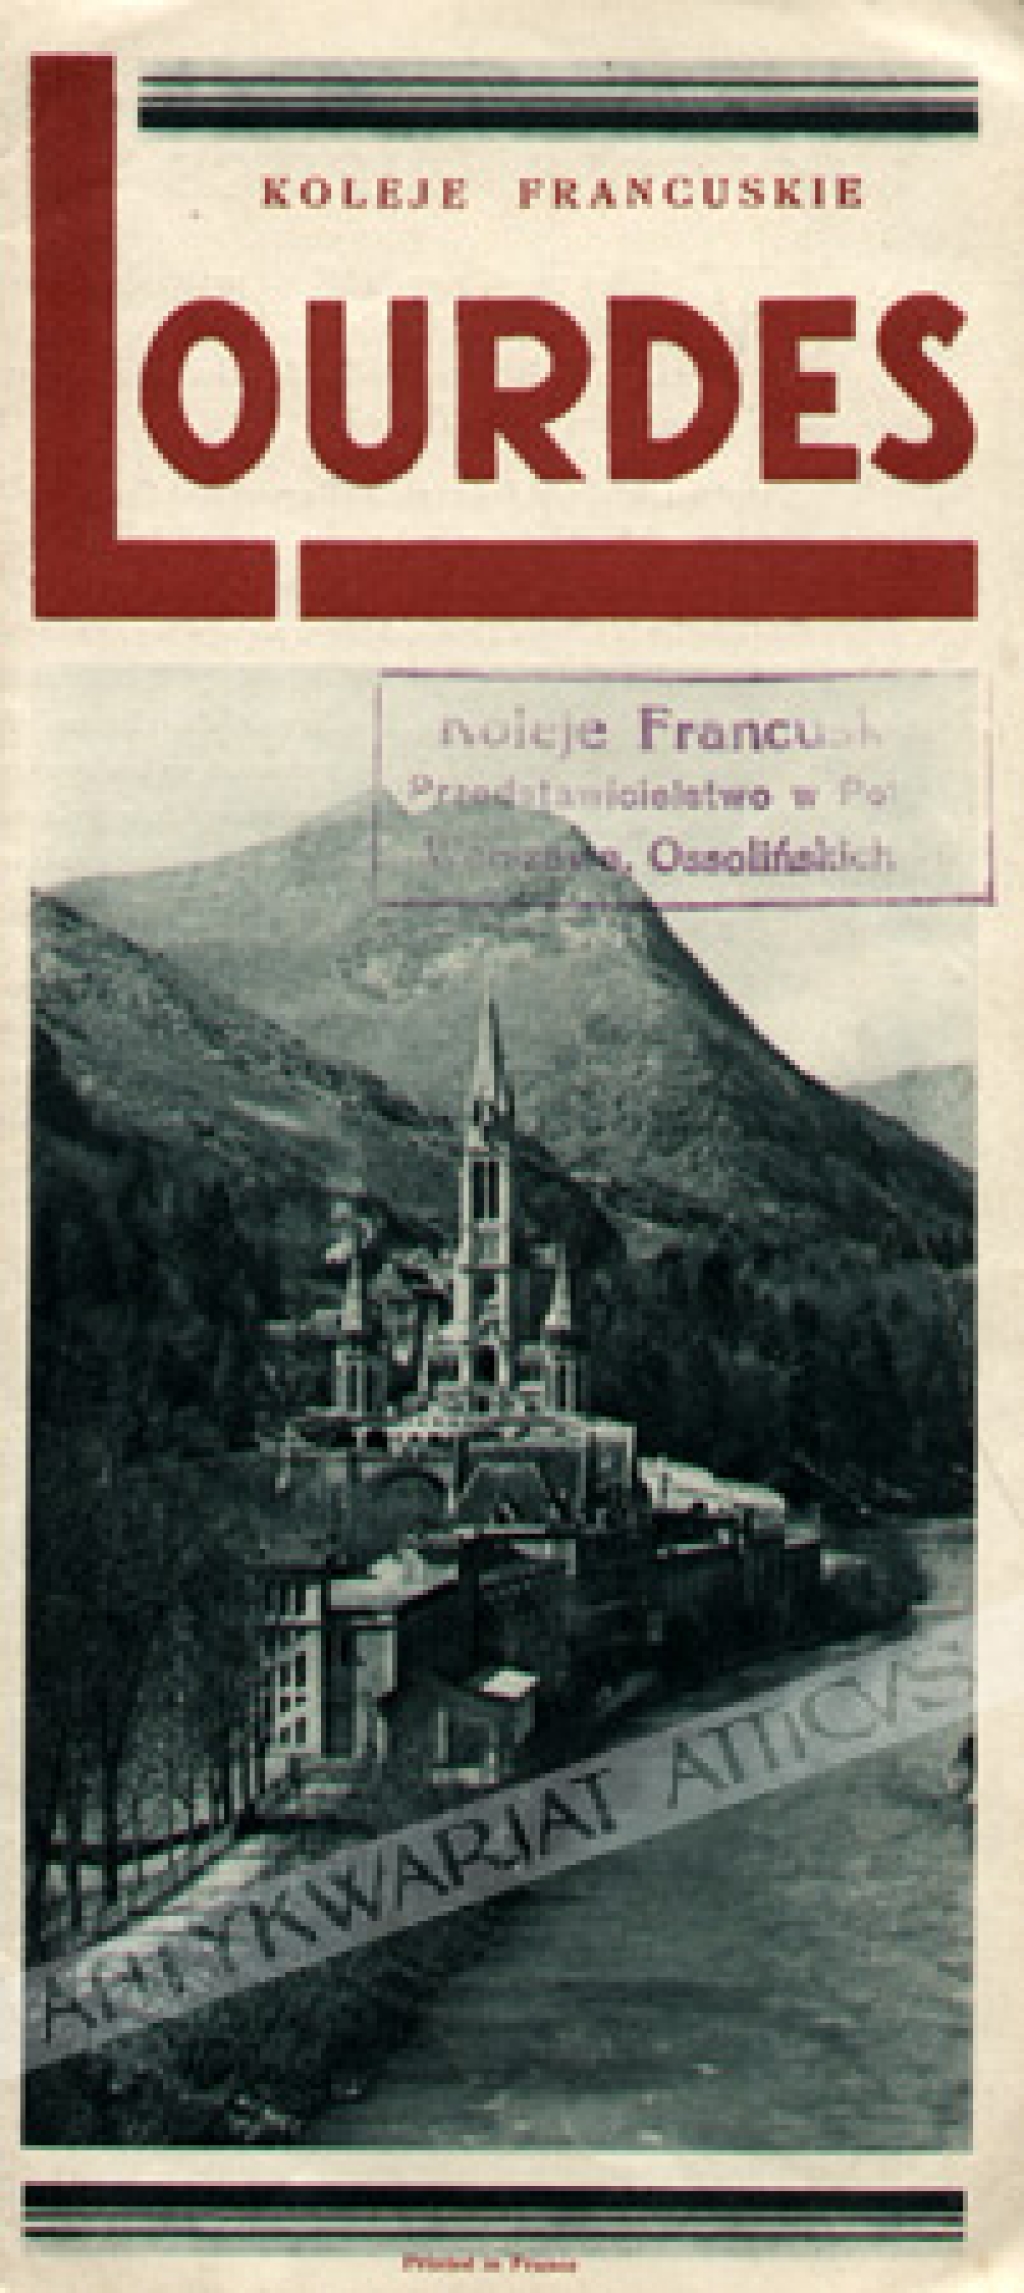 [folder reklamowy, lata 1930] Lourdes. Koleje francuskie